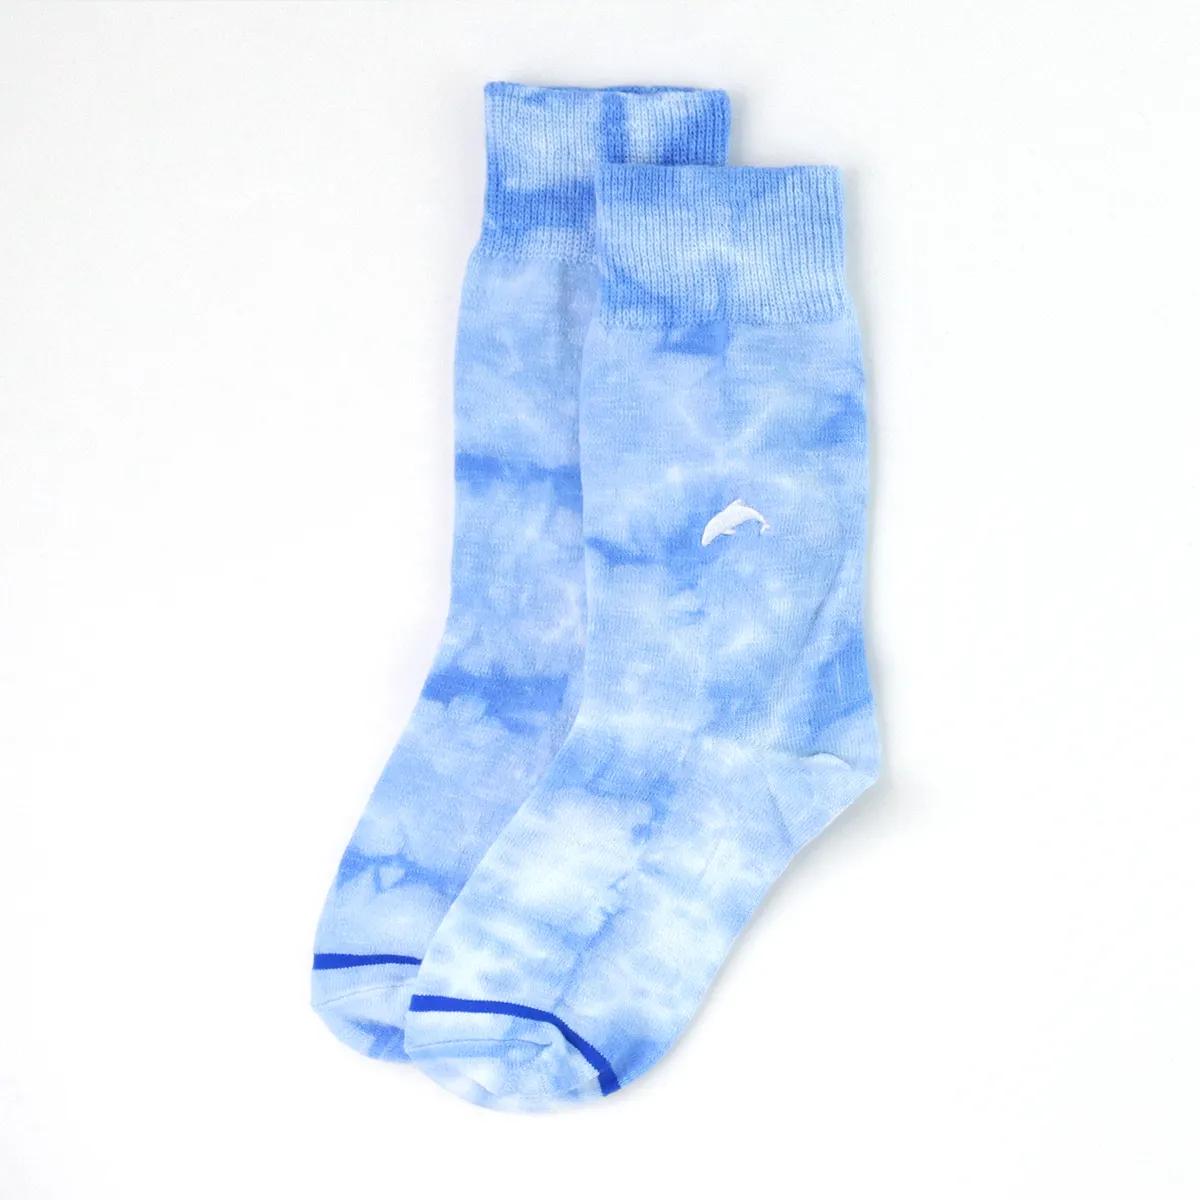 Blue dolphin tie dye socks.